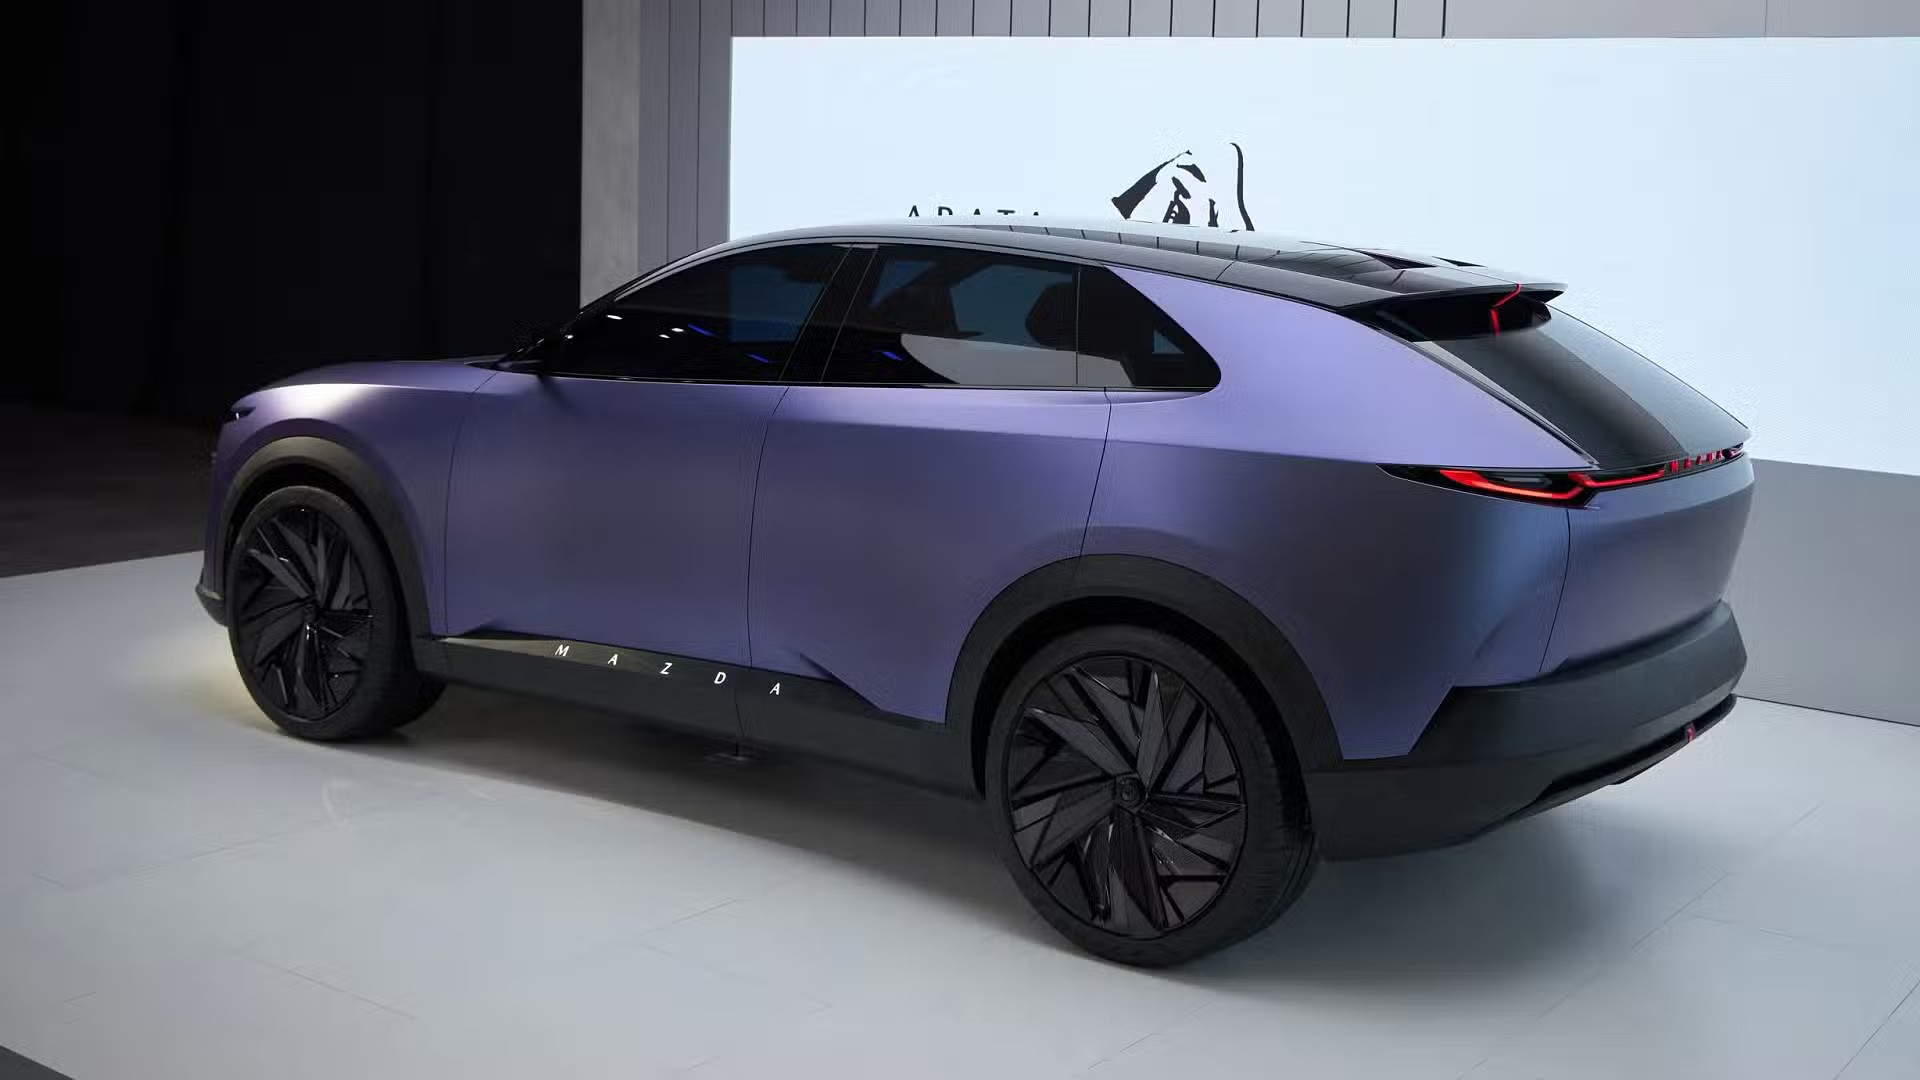 Ra mắt Mazda Arata Concept - SUV thuần điện ngang cỡ Mazda CX-5, chạy hơn 600km/sạc- Ảnh 2.